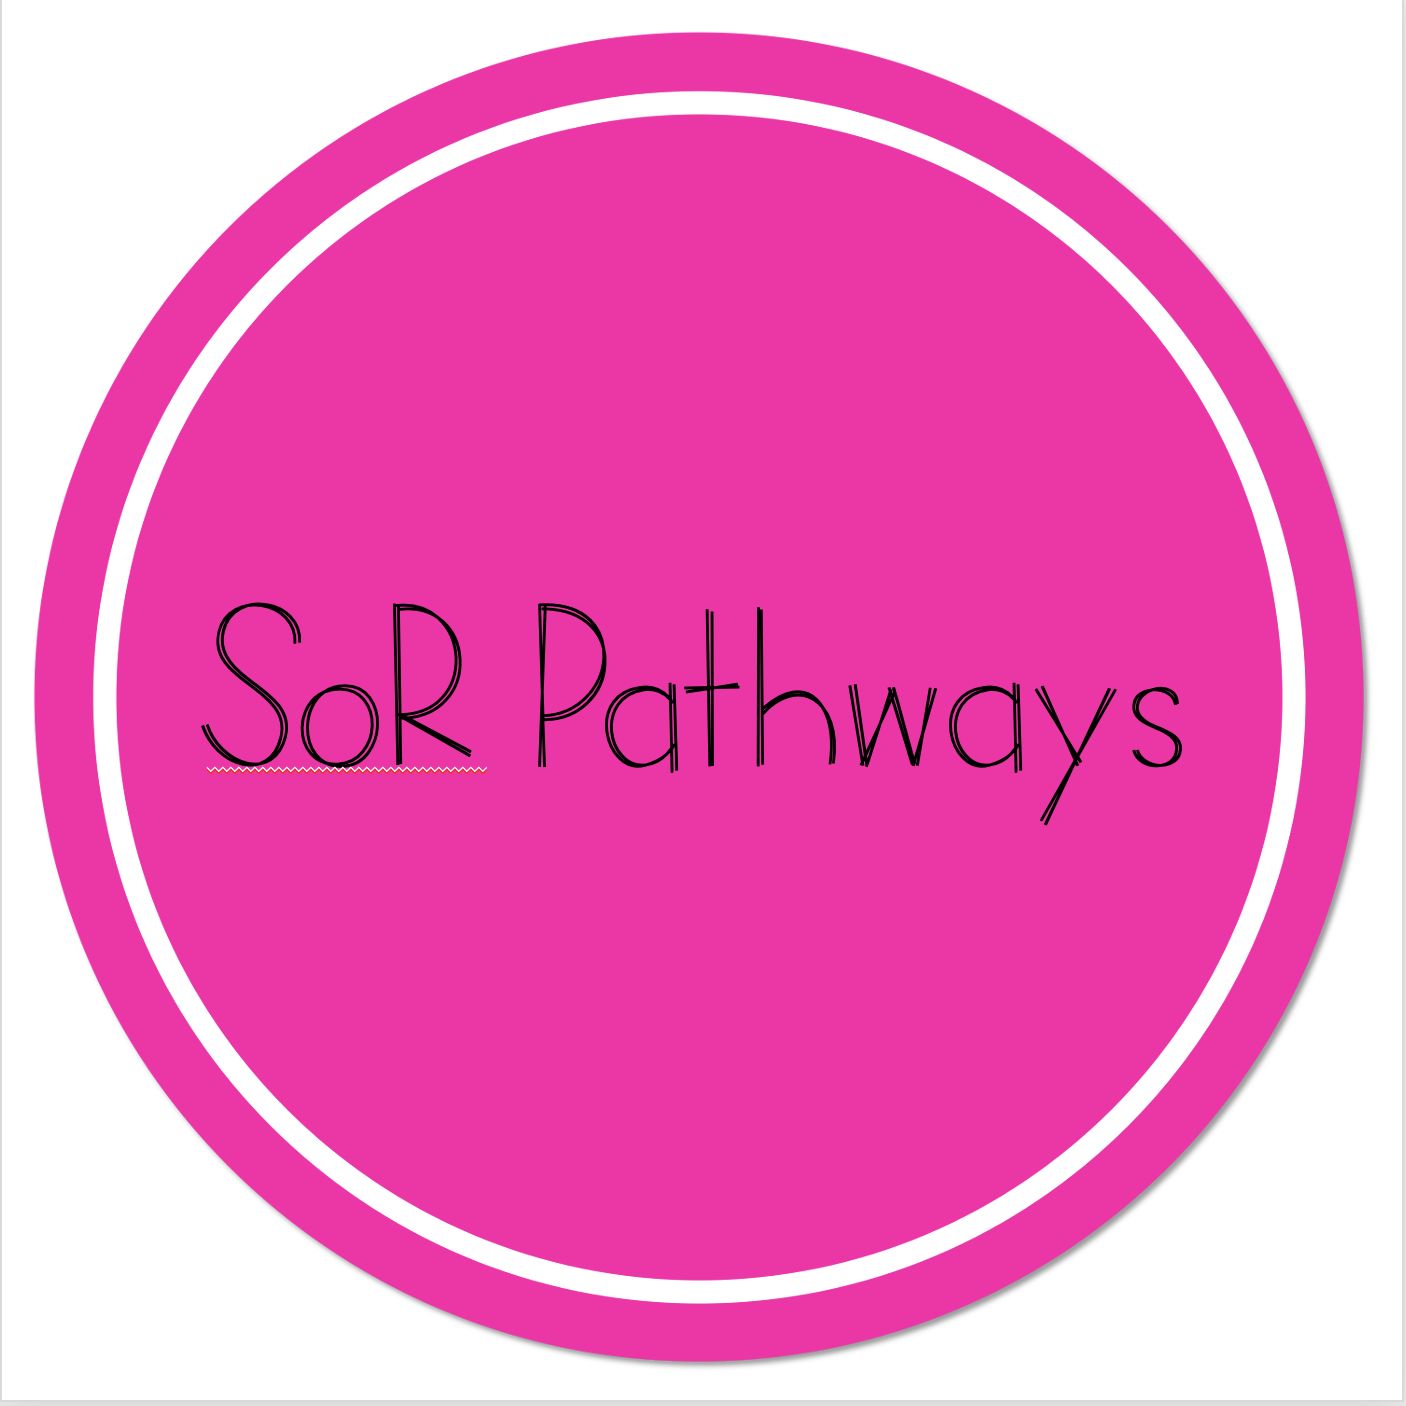 SoR Pathways